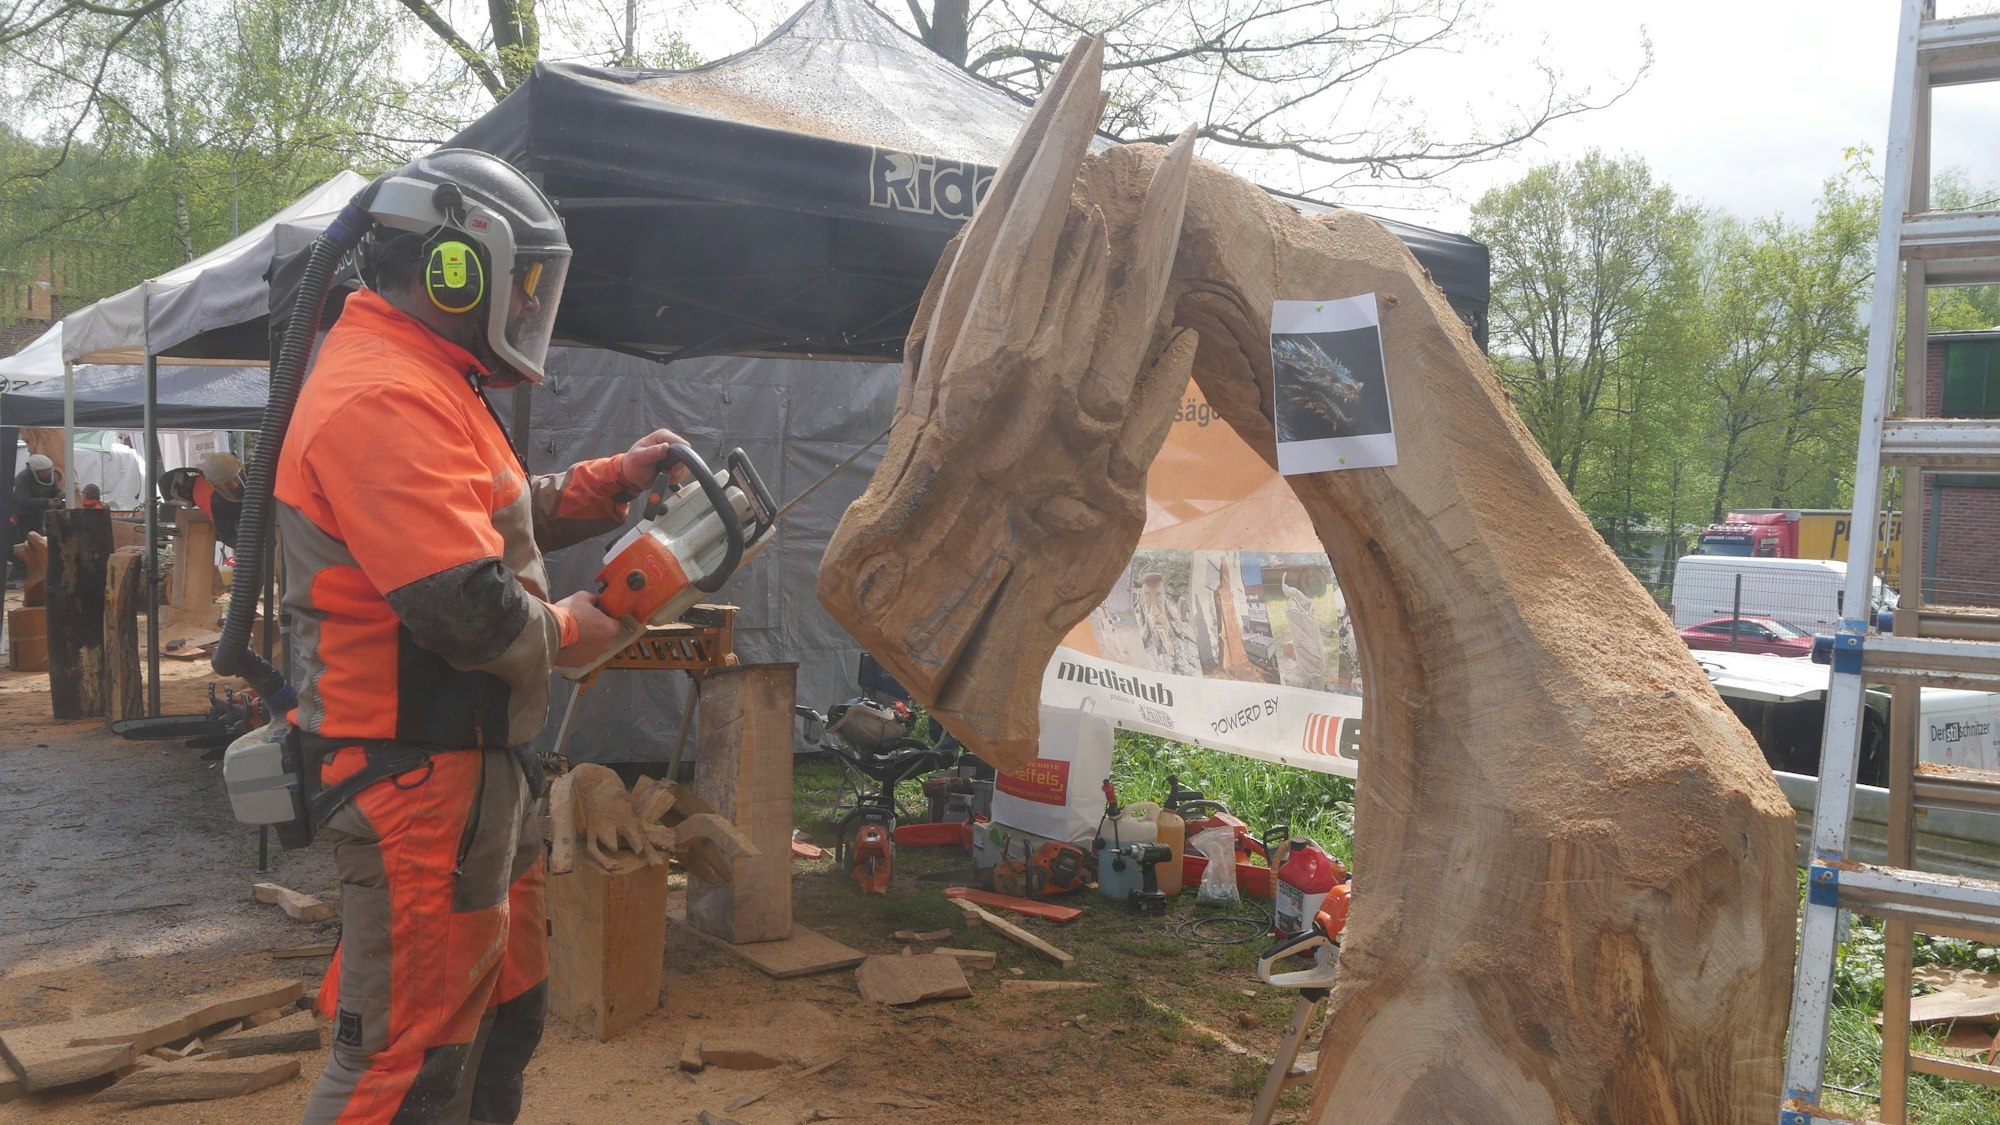 Ein Mann im Schutzanzug und mit Helm arbeitet mit der Kettensäge an einer Holzskulptur.